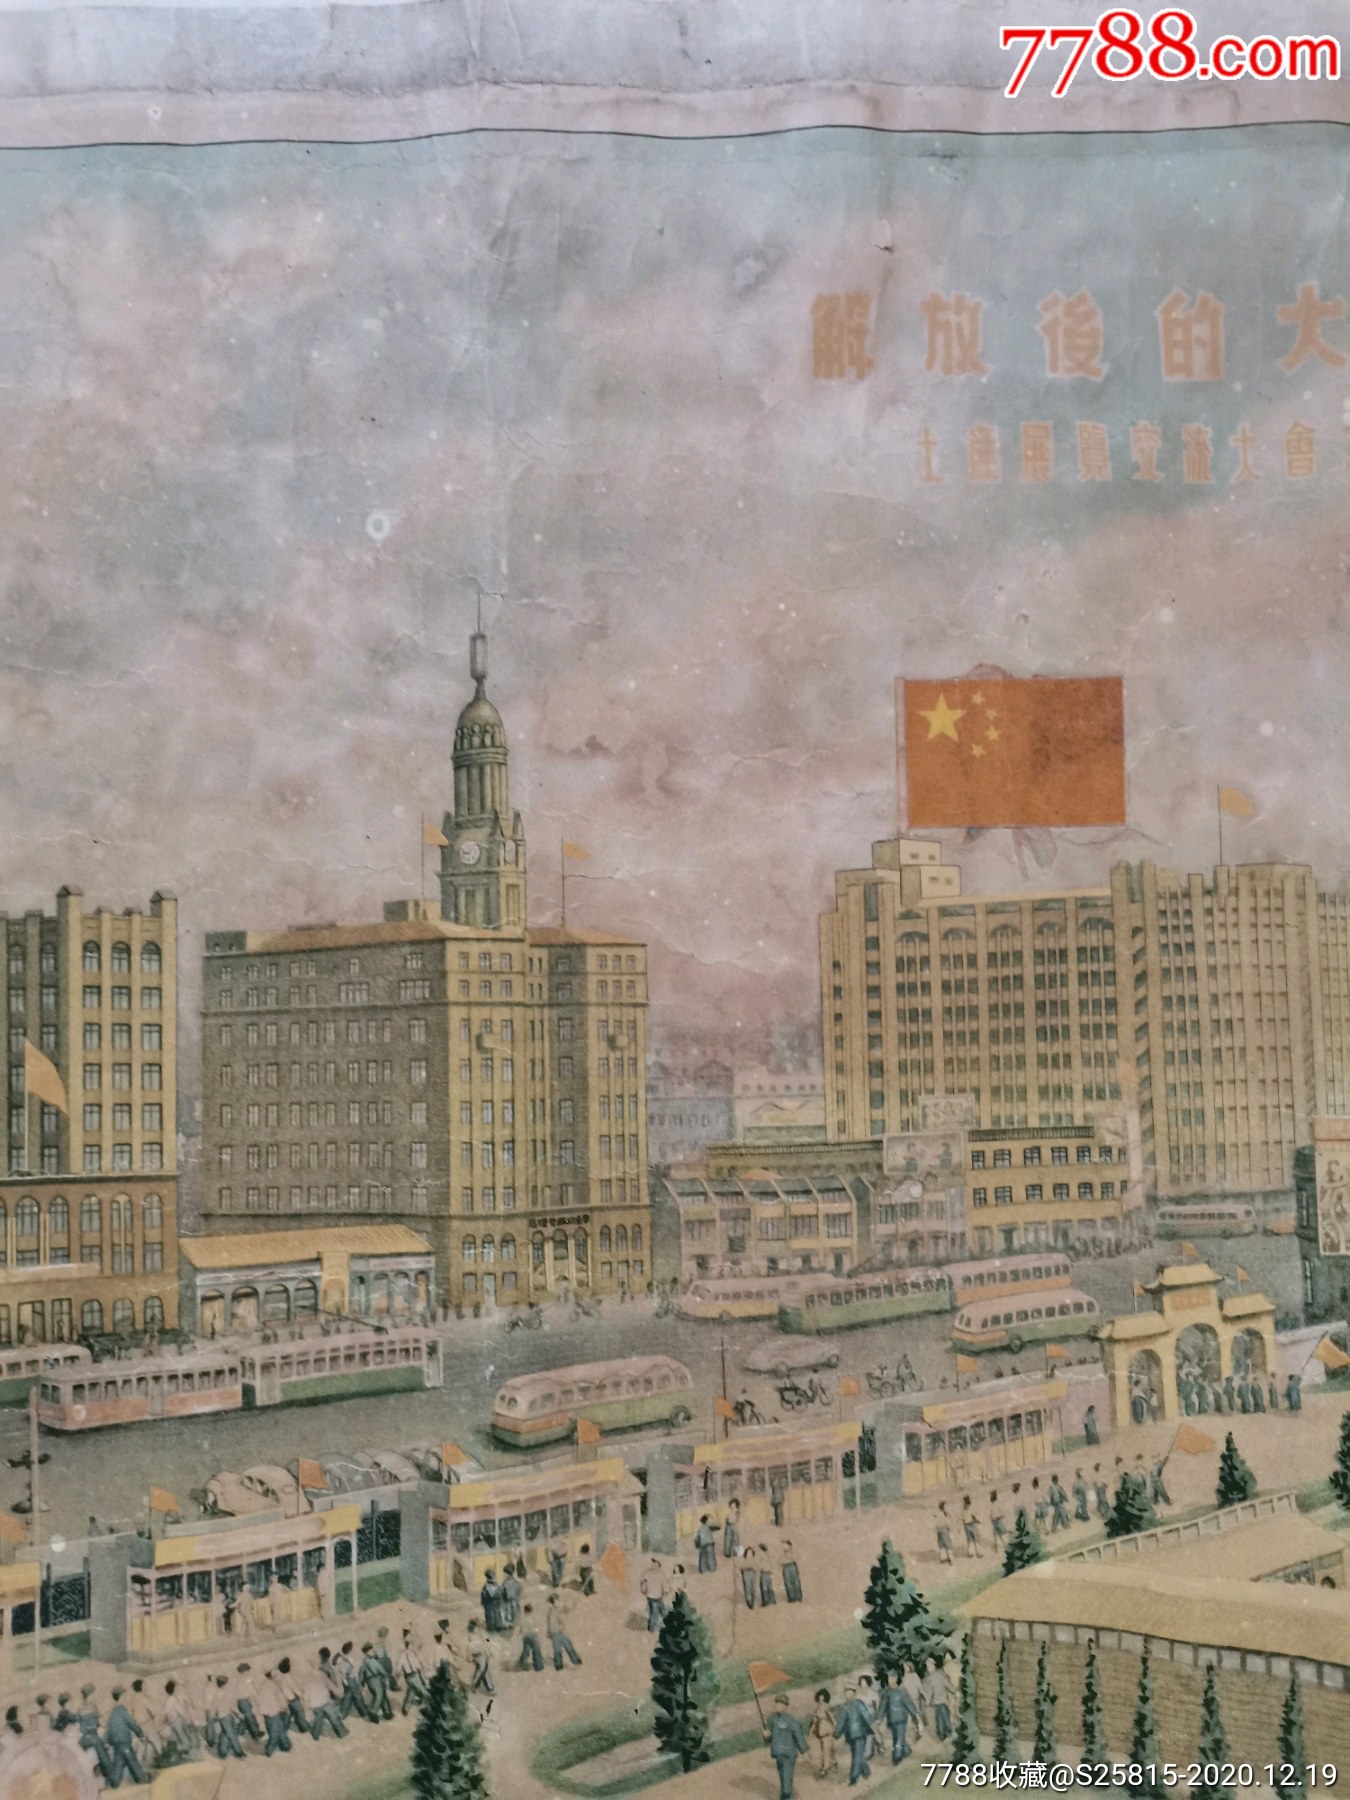 解放后的大上海土产展览会